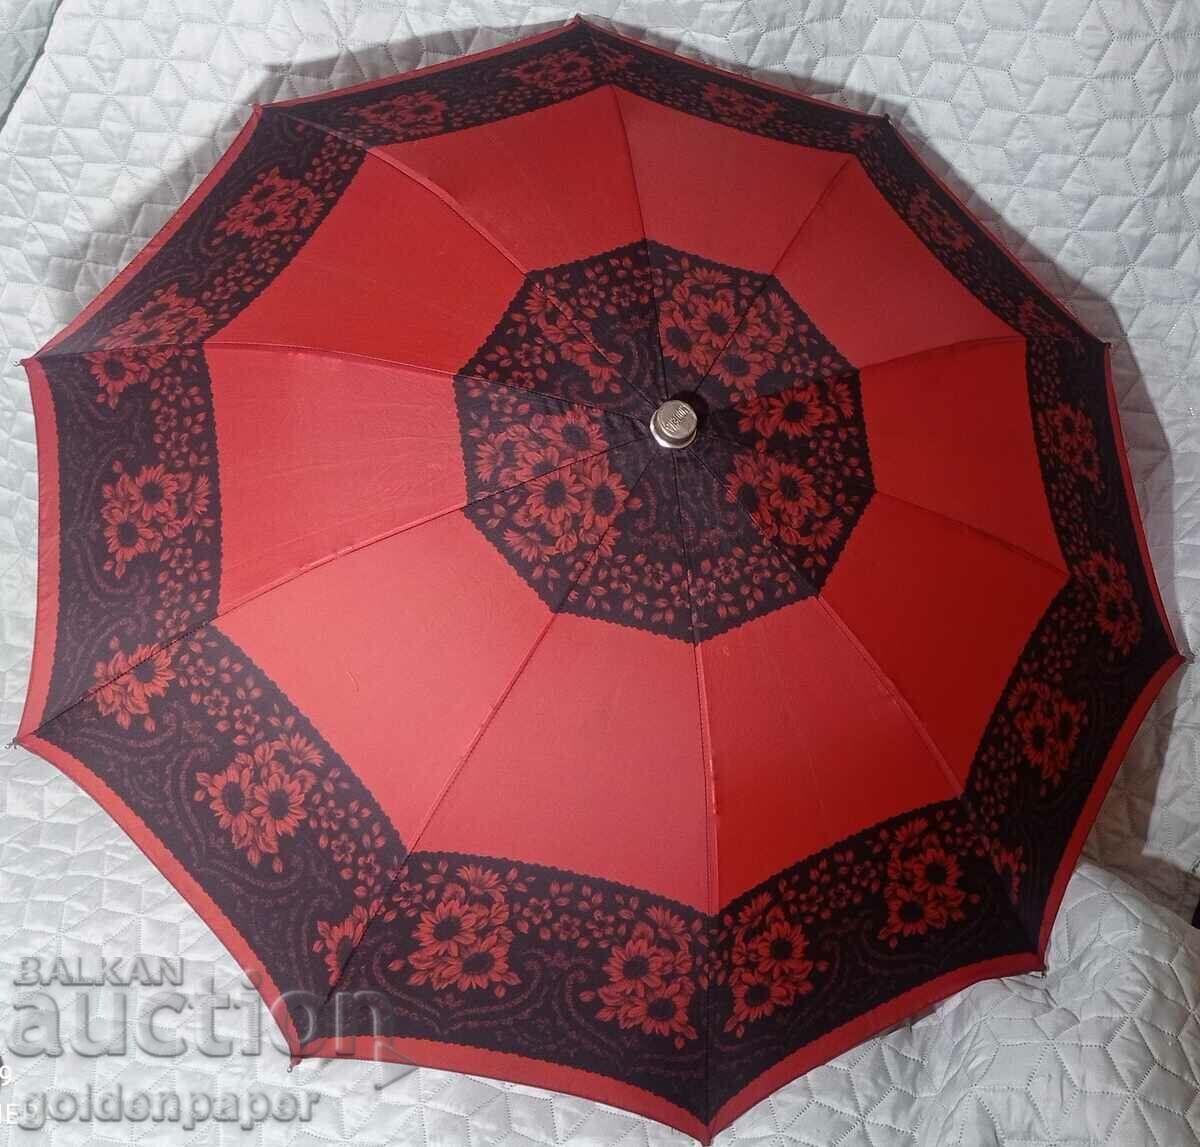 Γερμανική ομπρέλα Μόντενα